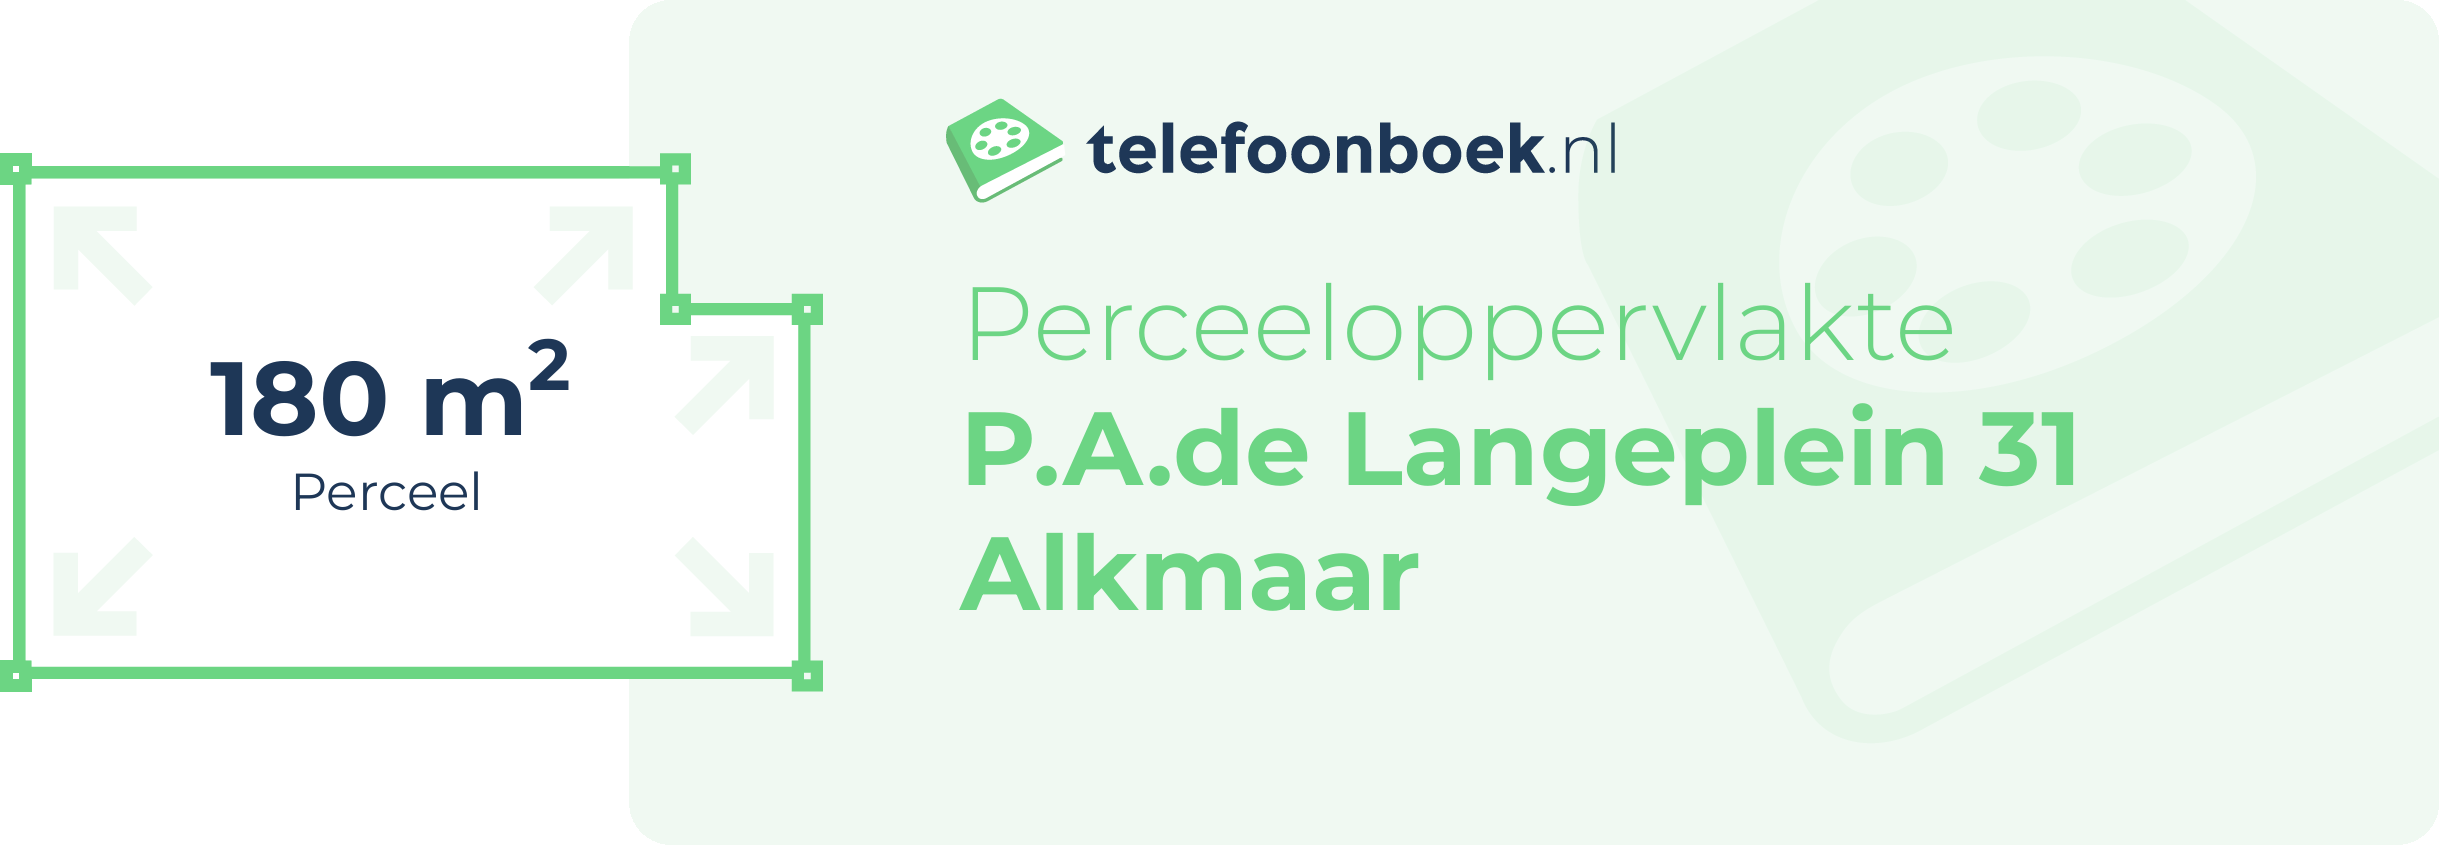 Perceeloppervlakte P.A.de Langeplein 31 Alkmaar